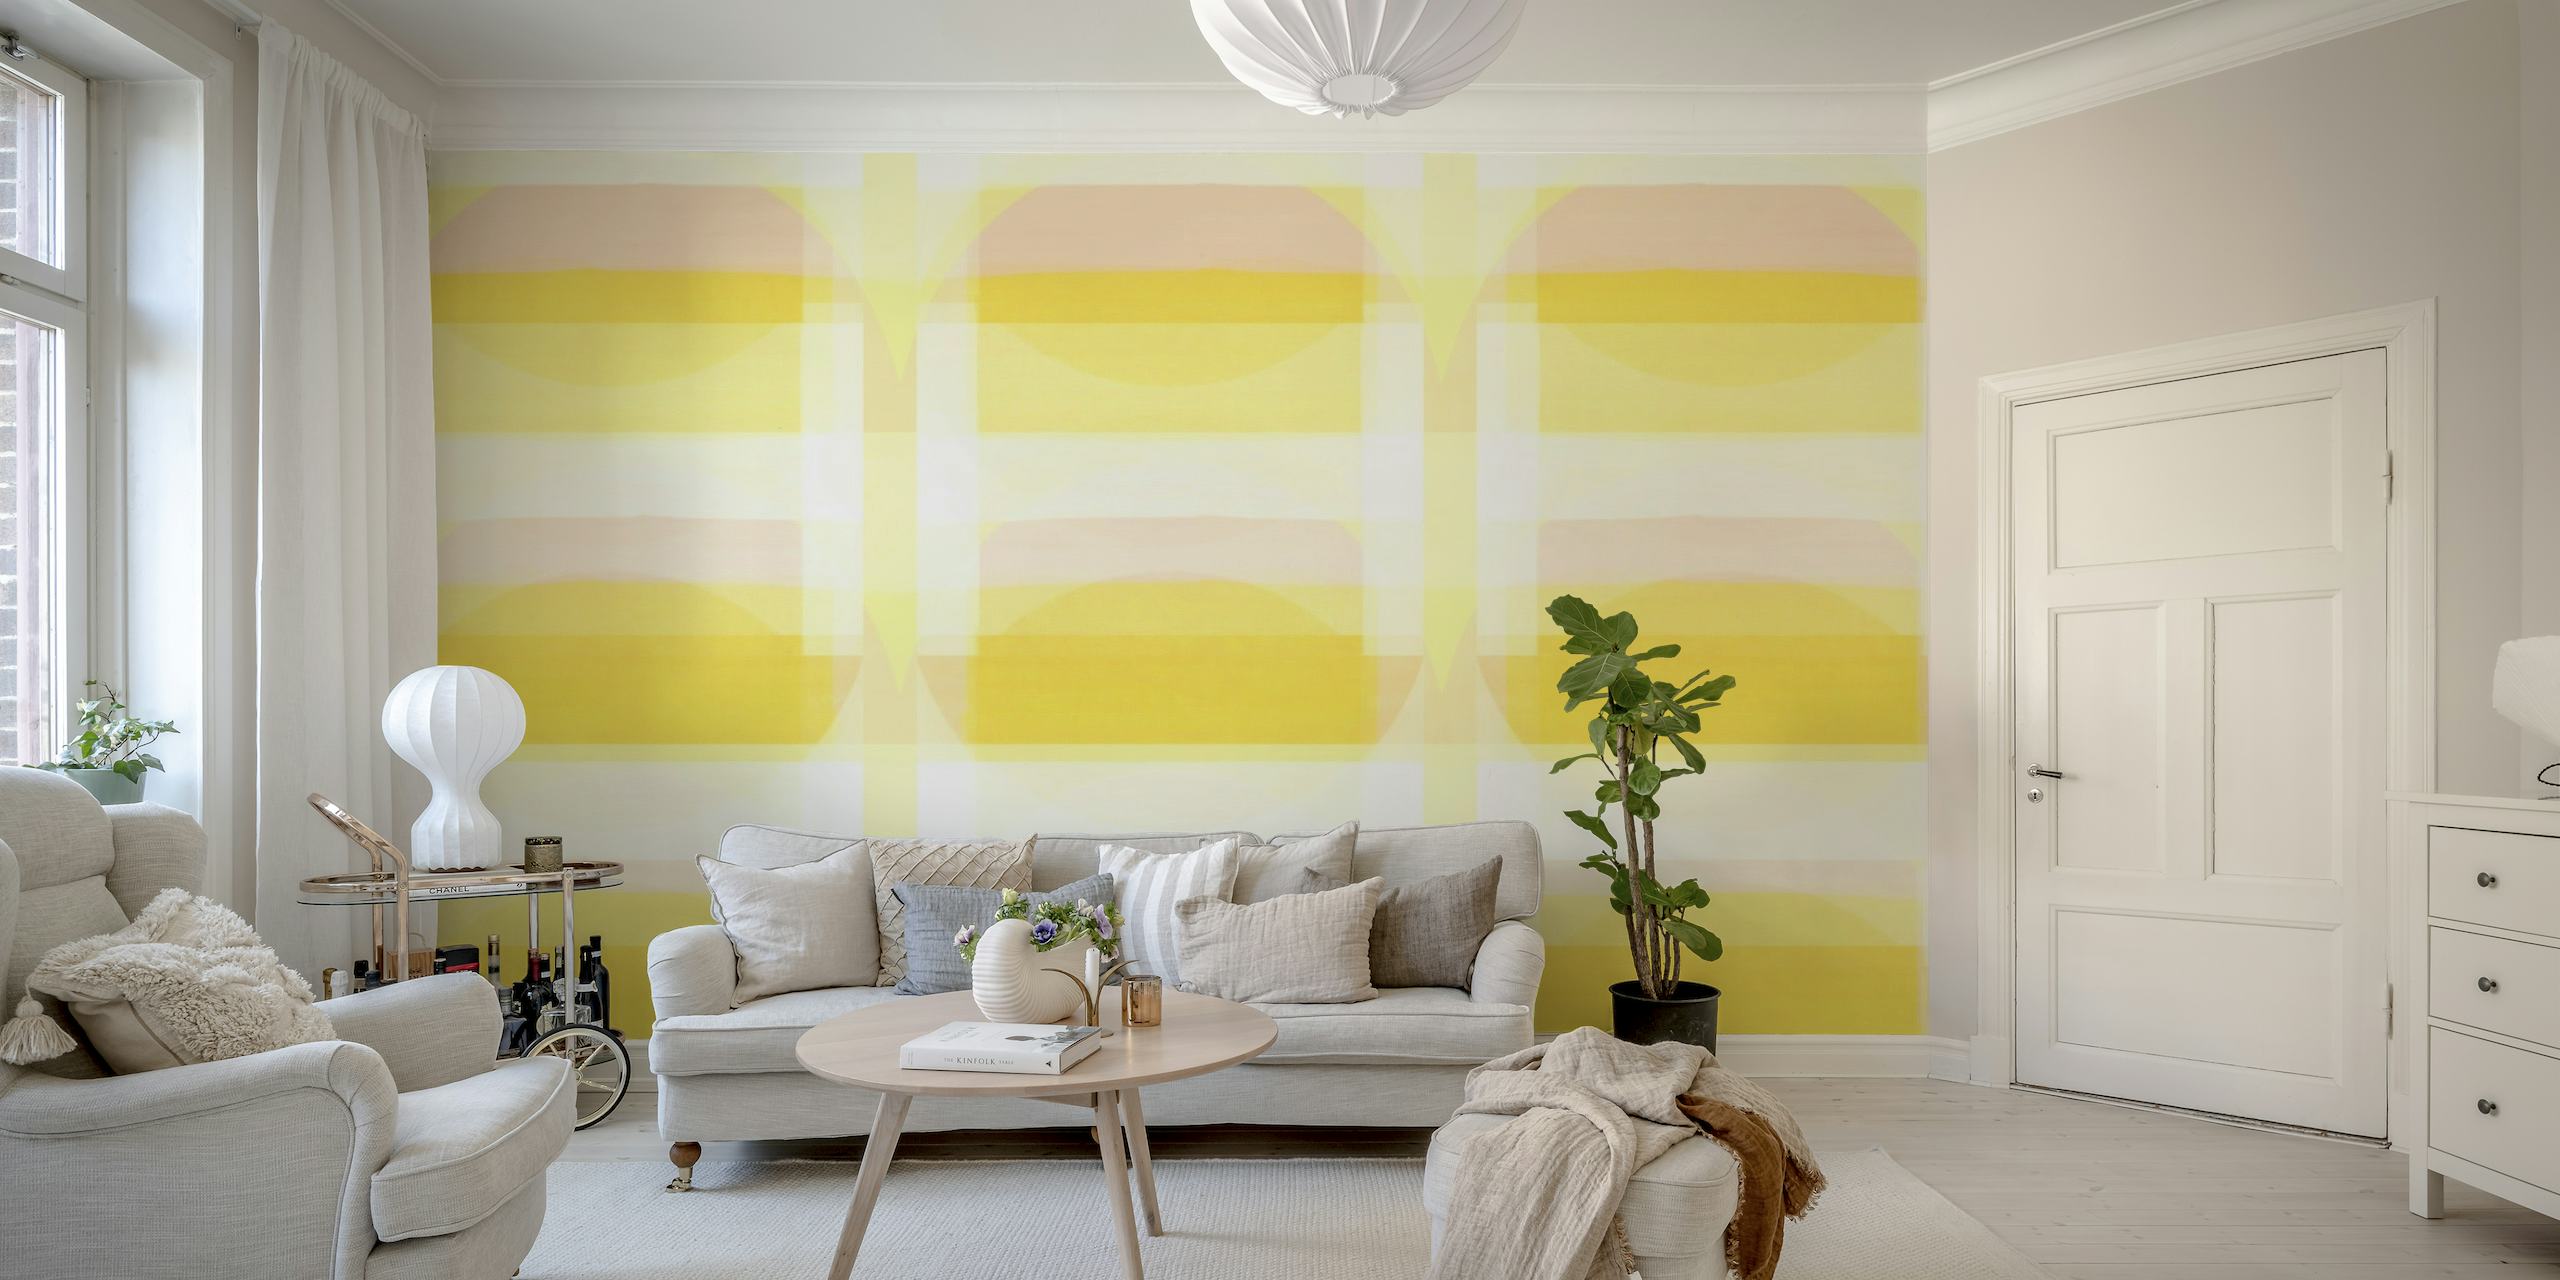 Aurinkoinen Bauhaus geometrinen kuviollinen seinämaalaus pastellinkeltaisena ja valkoisena